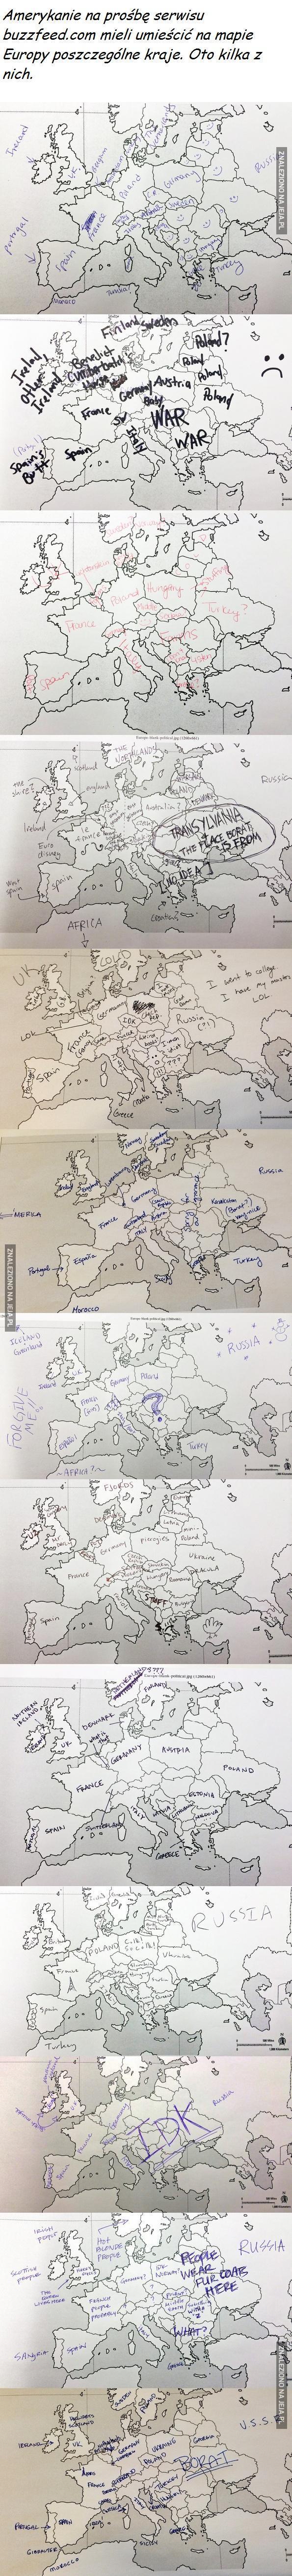 Jak Amerykanie widzą Europę